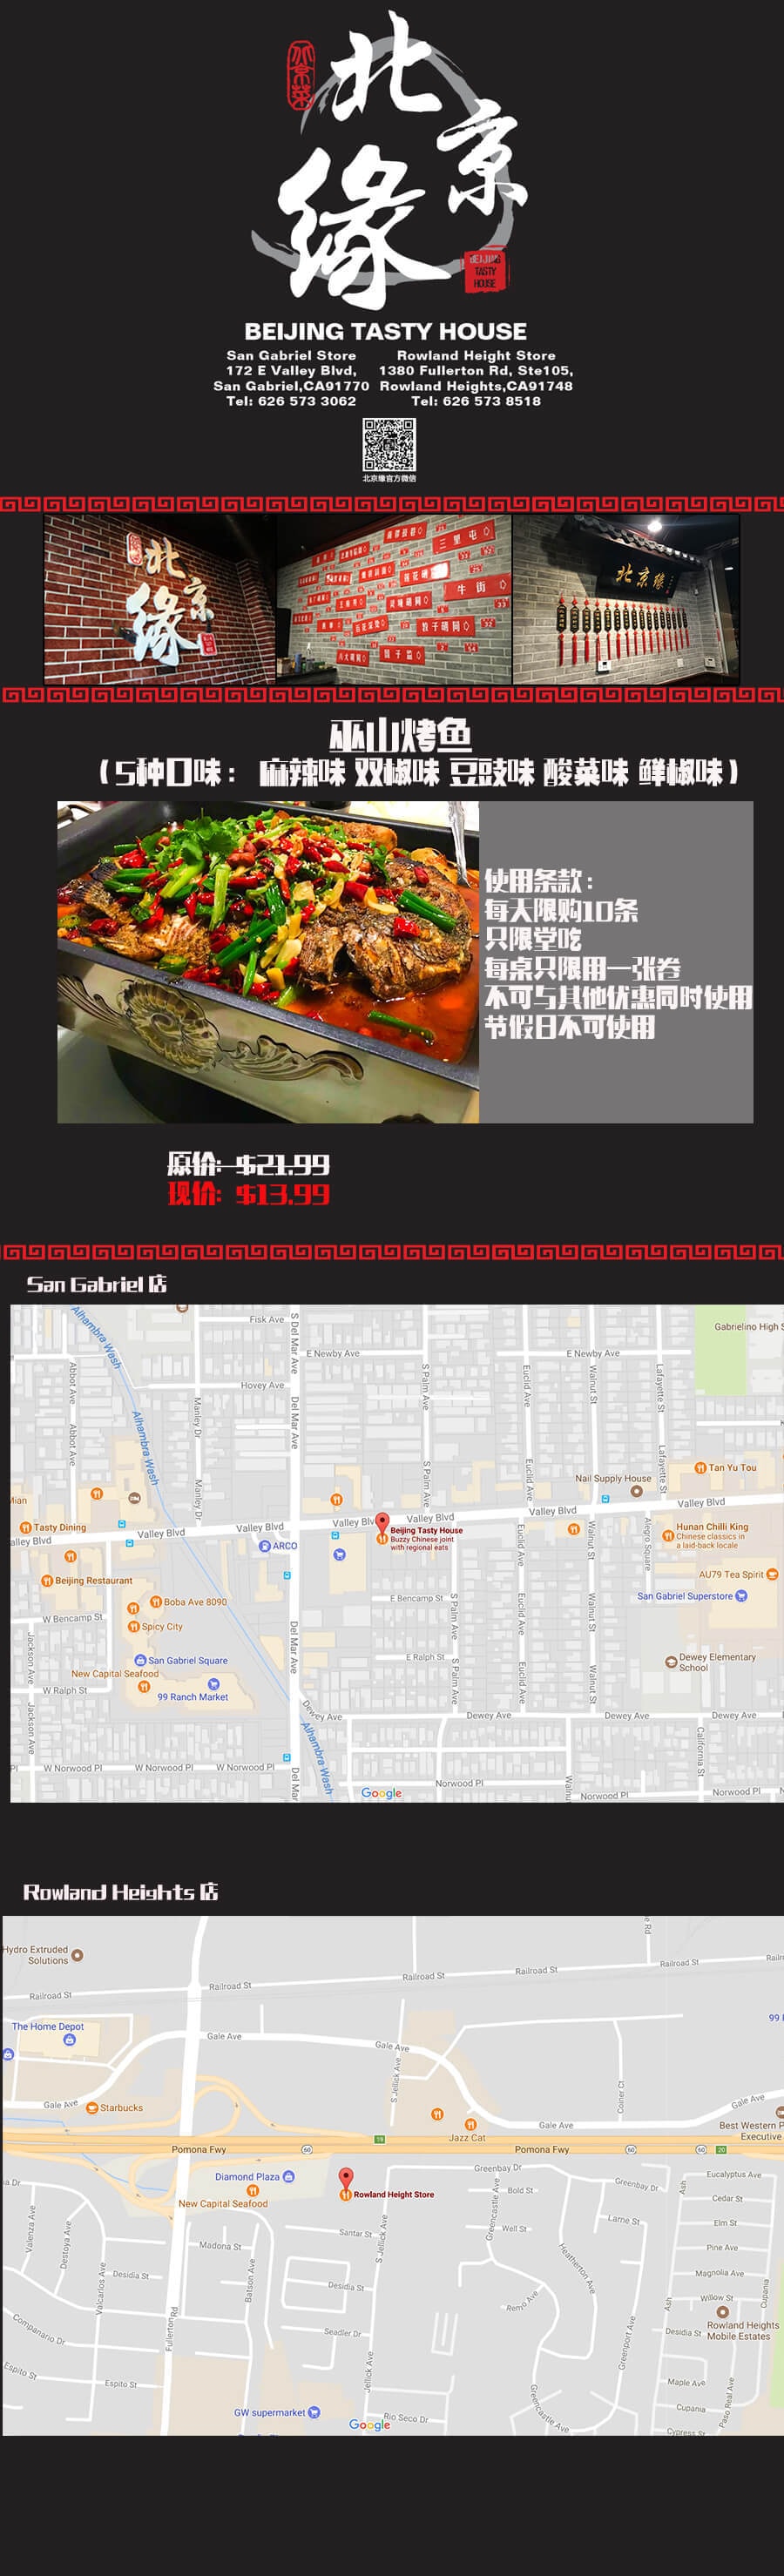 [本地服务] 北京缘  巫山烤鱼 5种口味麻辣味、双椒味、豆豉味、酸菜味、鲜椒味 任选一种  原价$21.99    现价$13.99